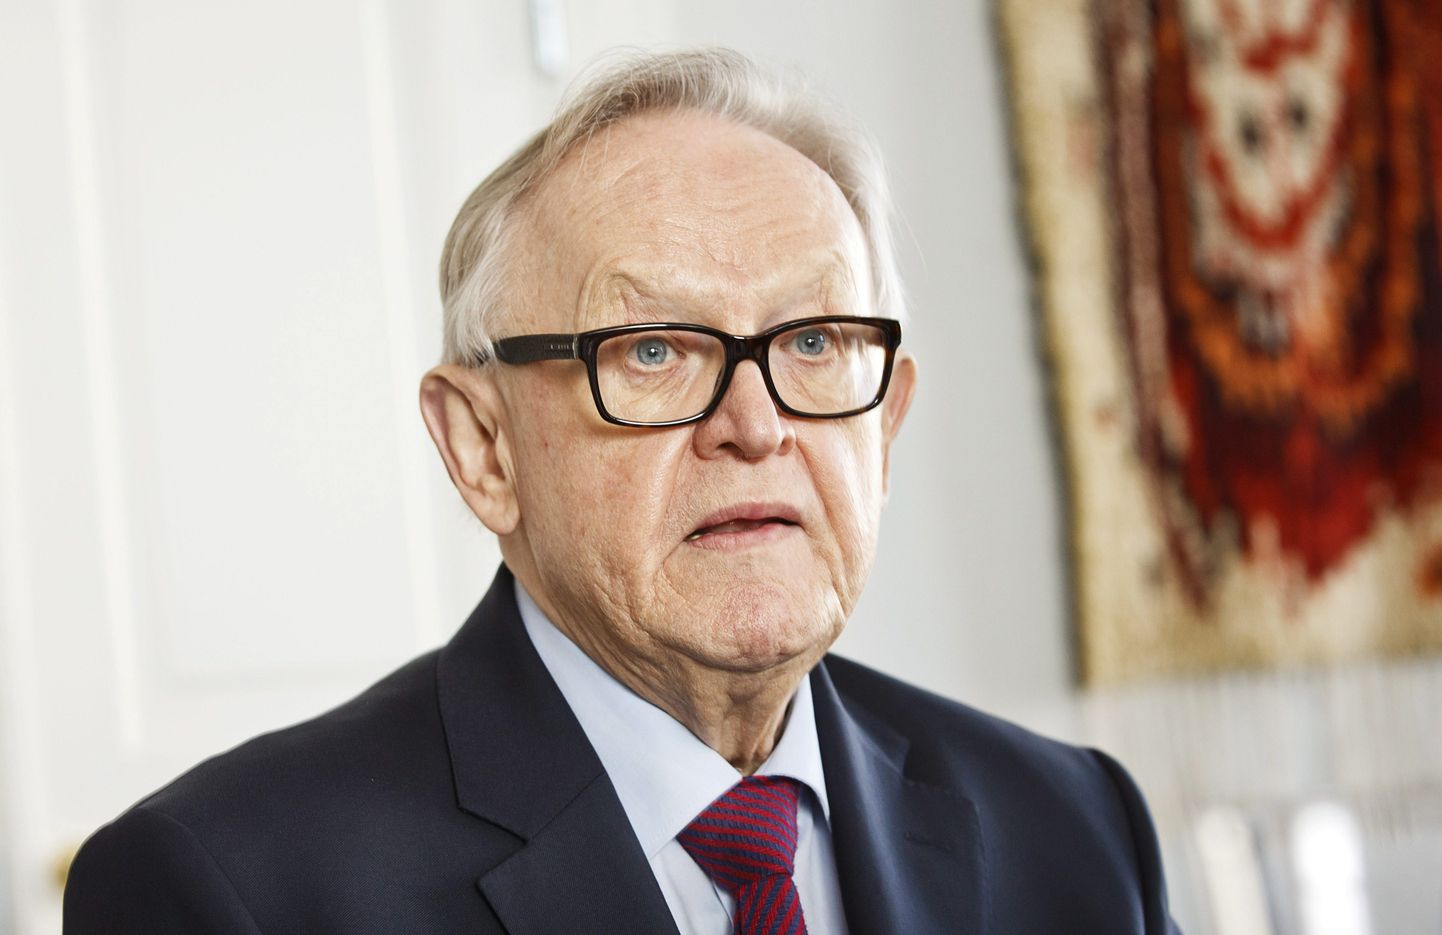 Soome endine president Martti Ahtisaari 16. veebruaril 2016 Helsingis poliitikaajakirjanikega kokkusaamisel